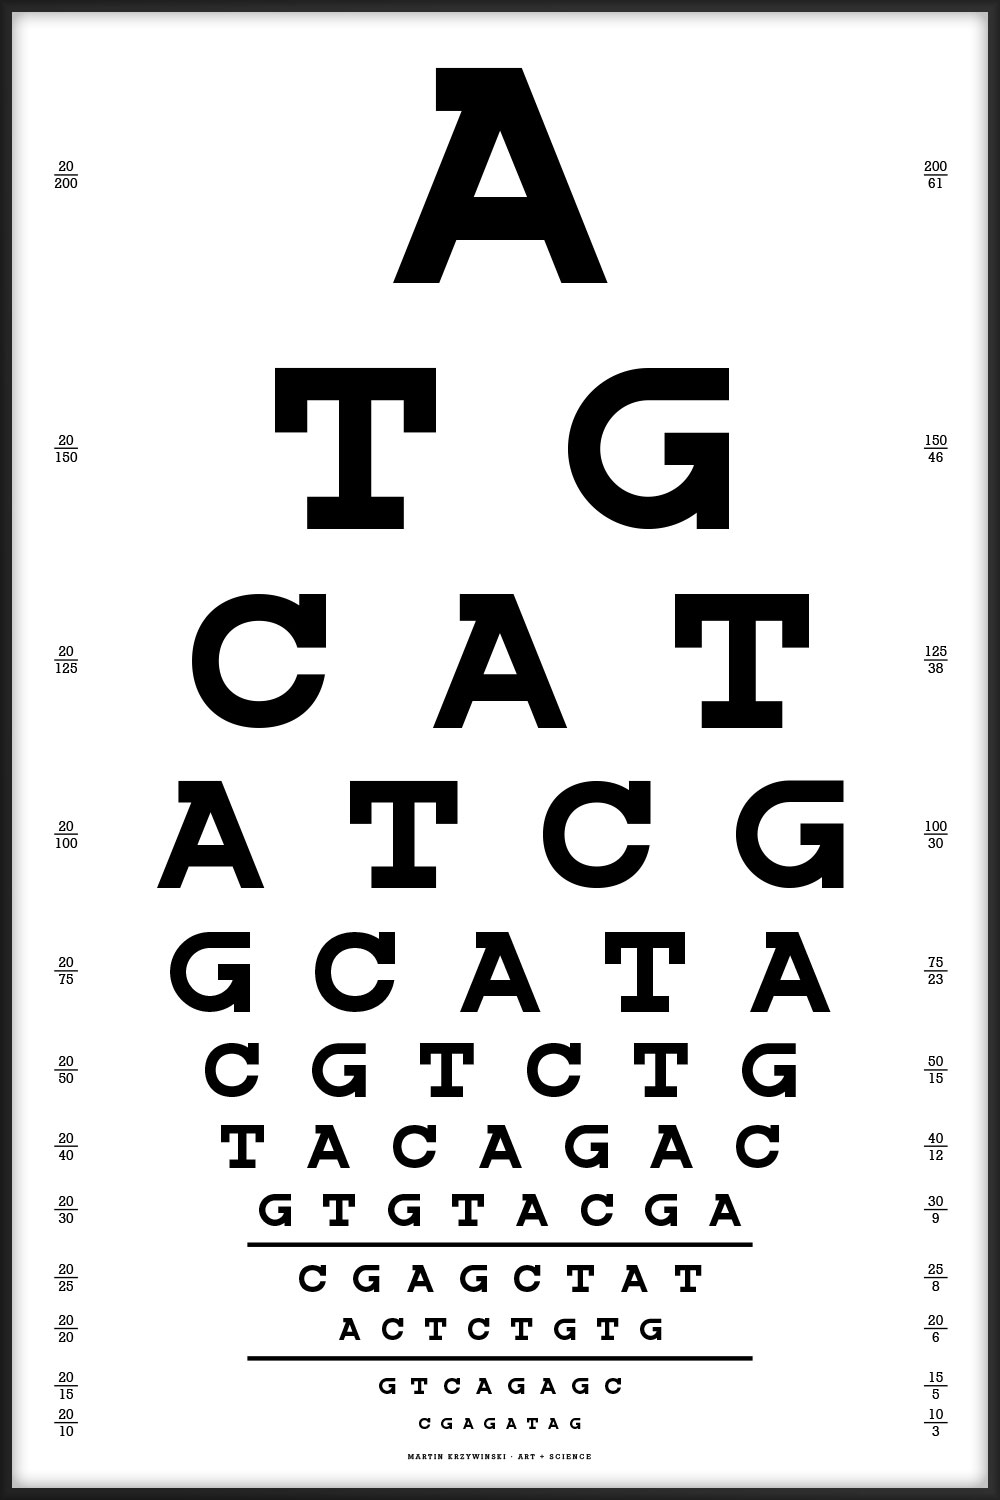 Snellen eye chart — genomic sequence by Martin Krzywinski